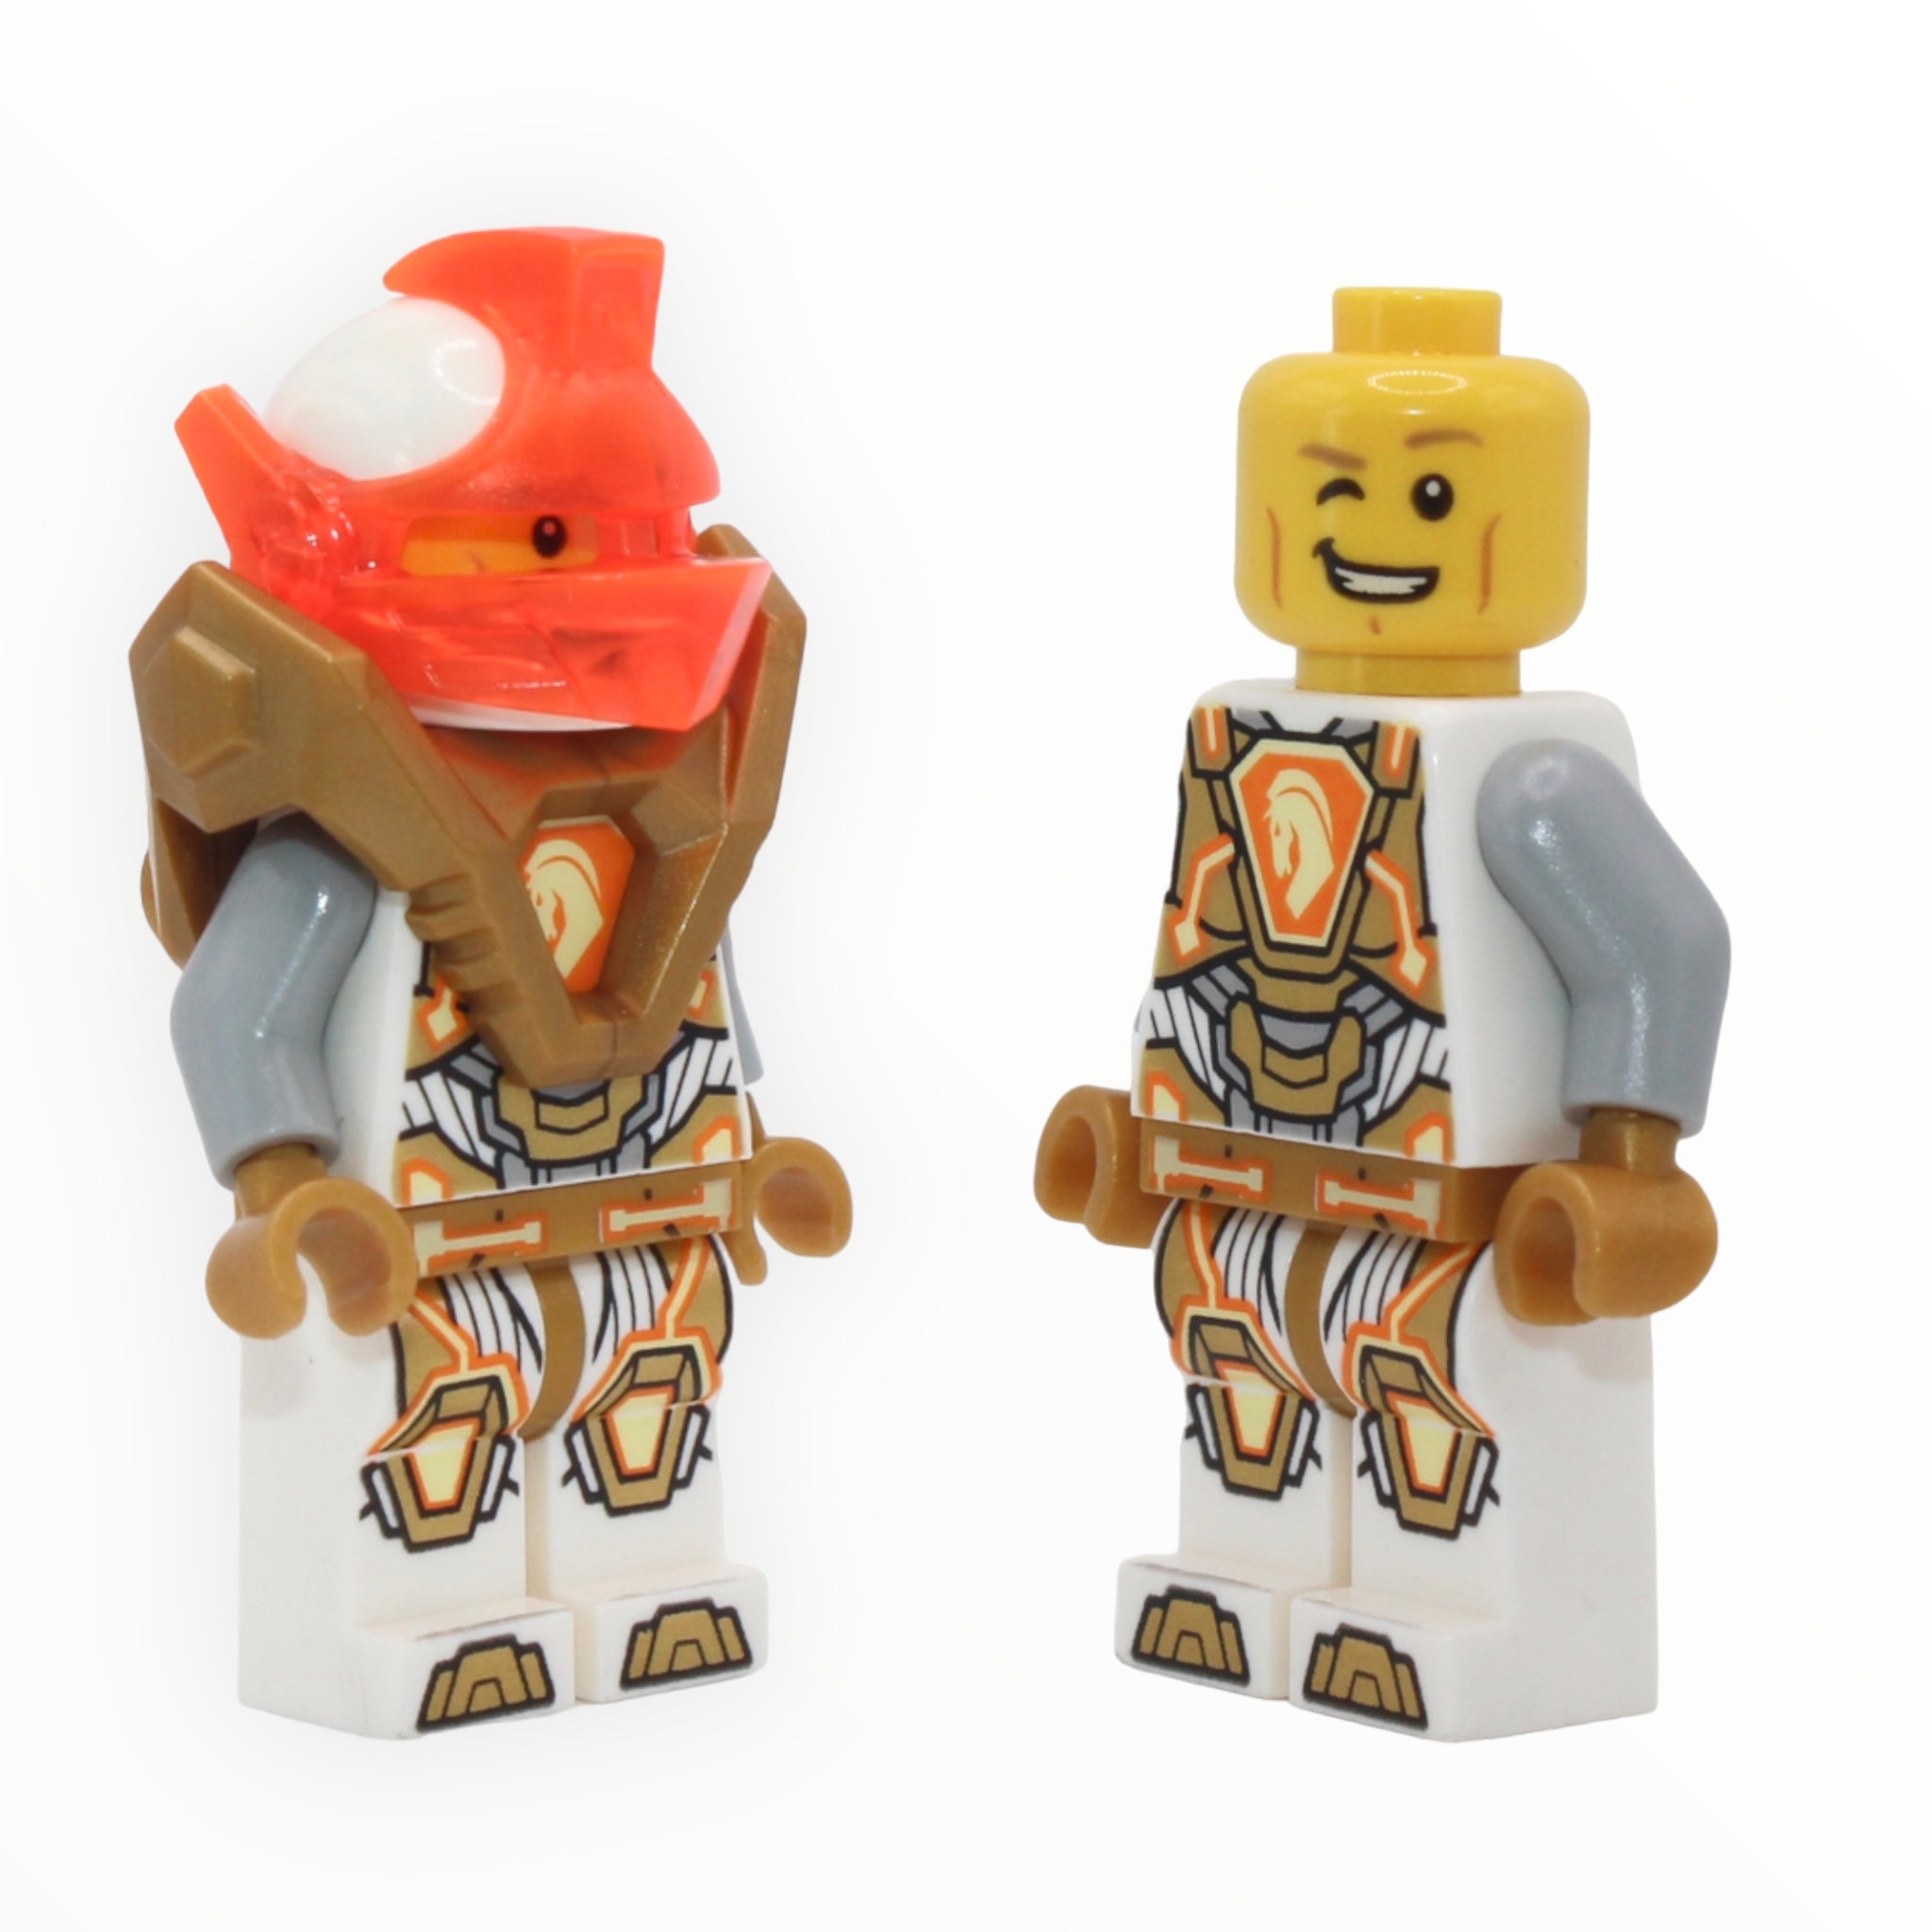 Lance (orange visor, gold armor)